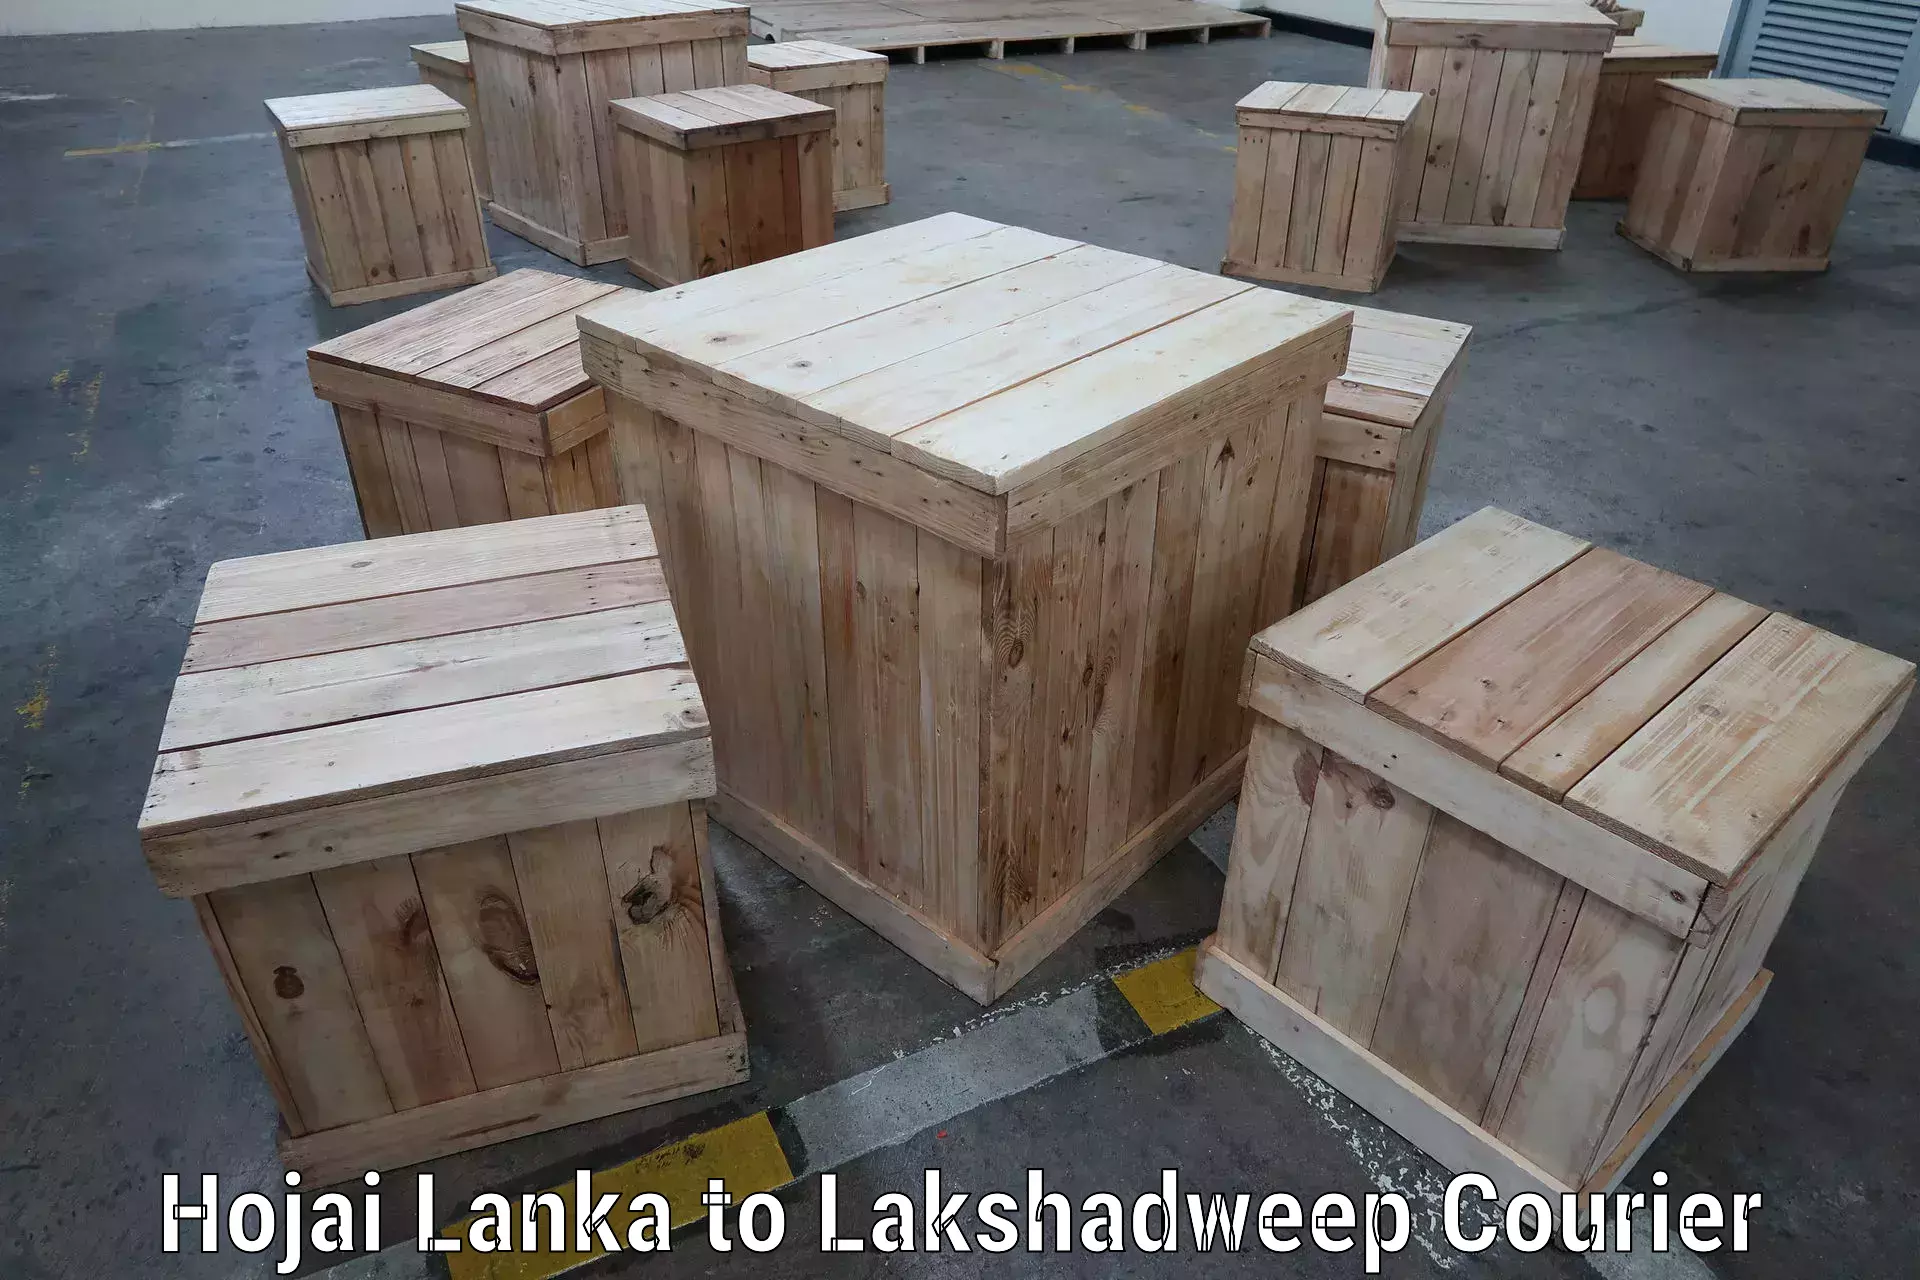 Digital shipping tools in Hojai Lanka to Lakshadweep